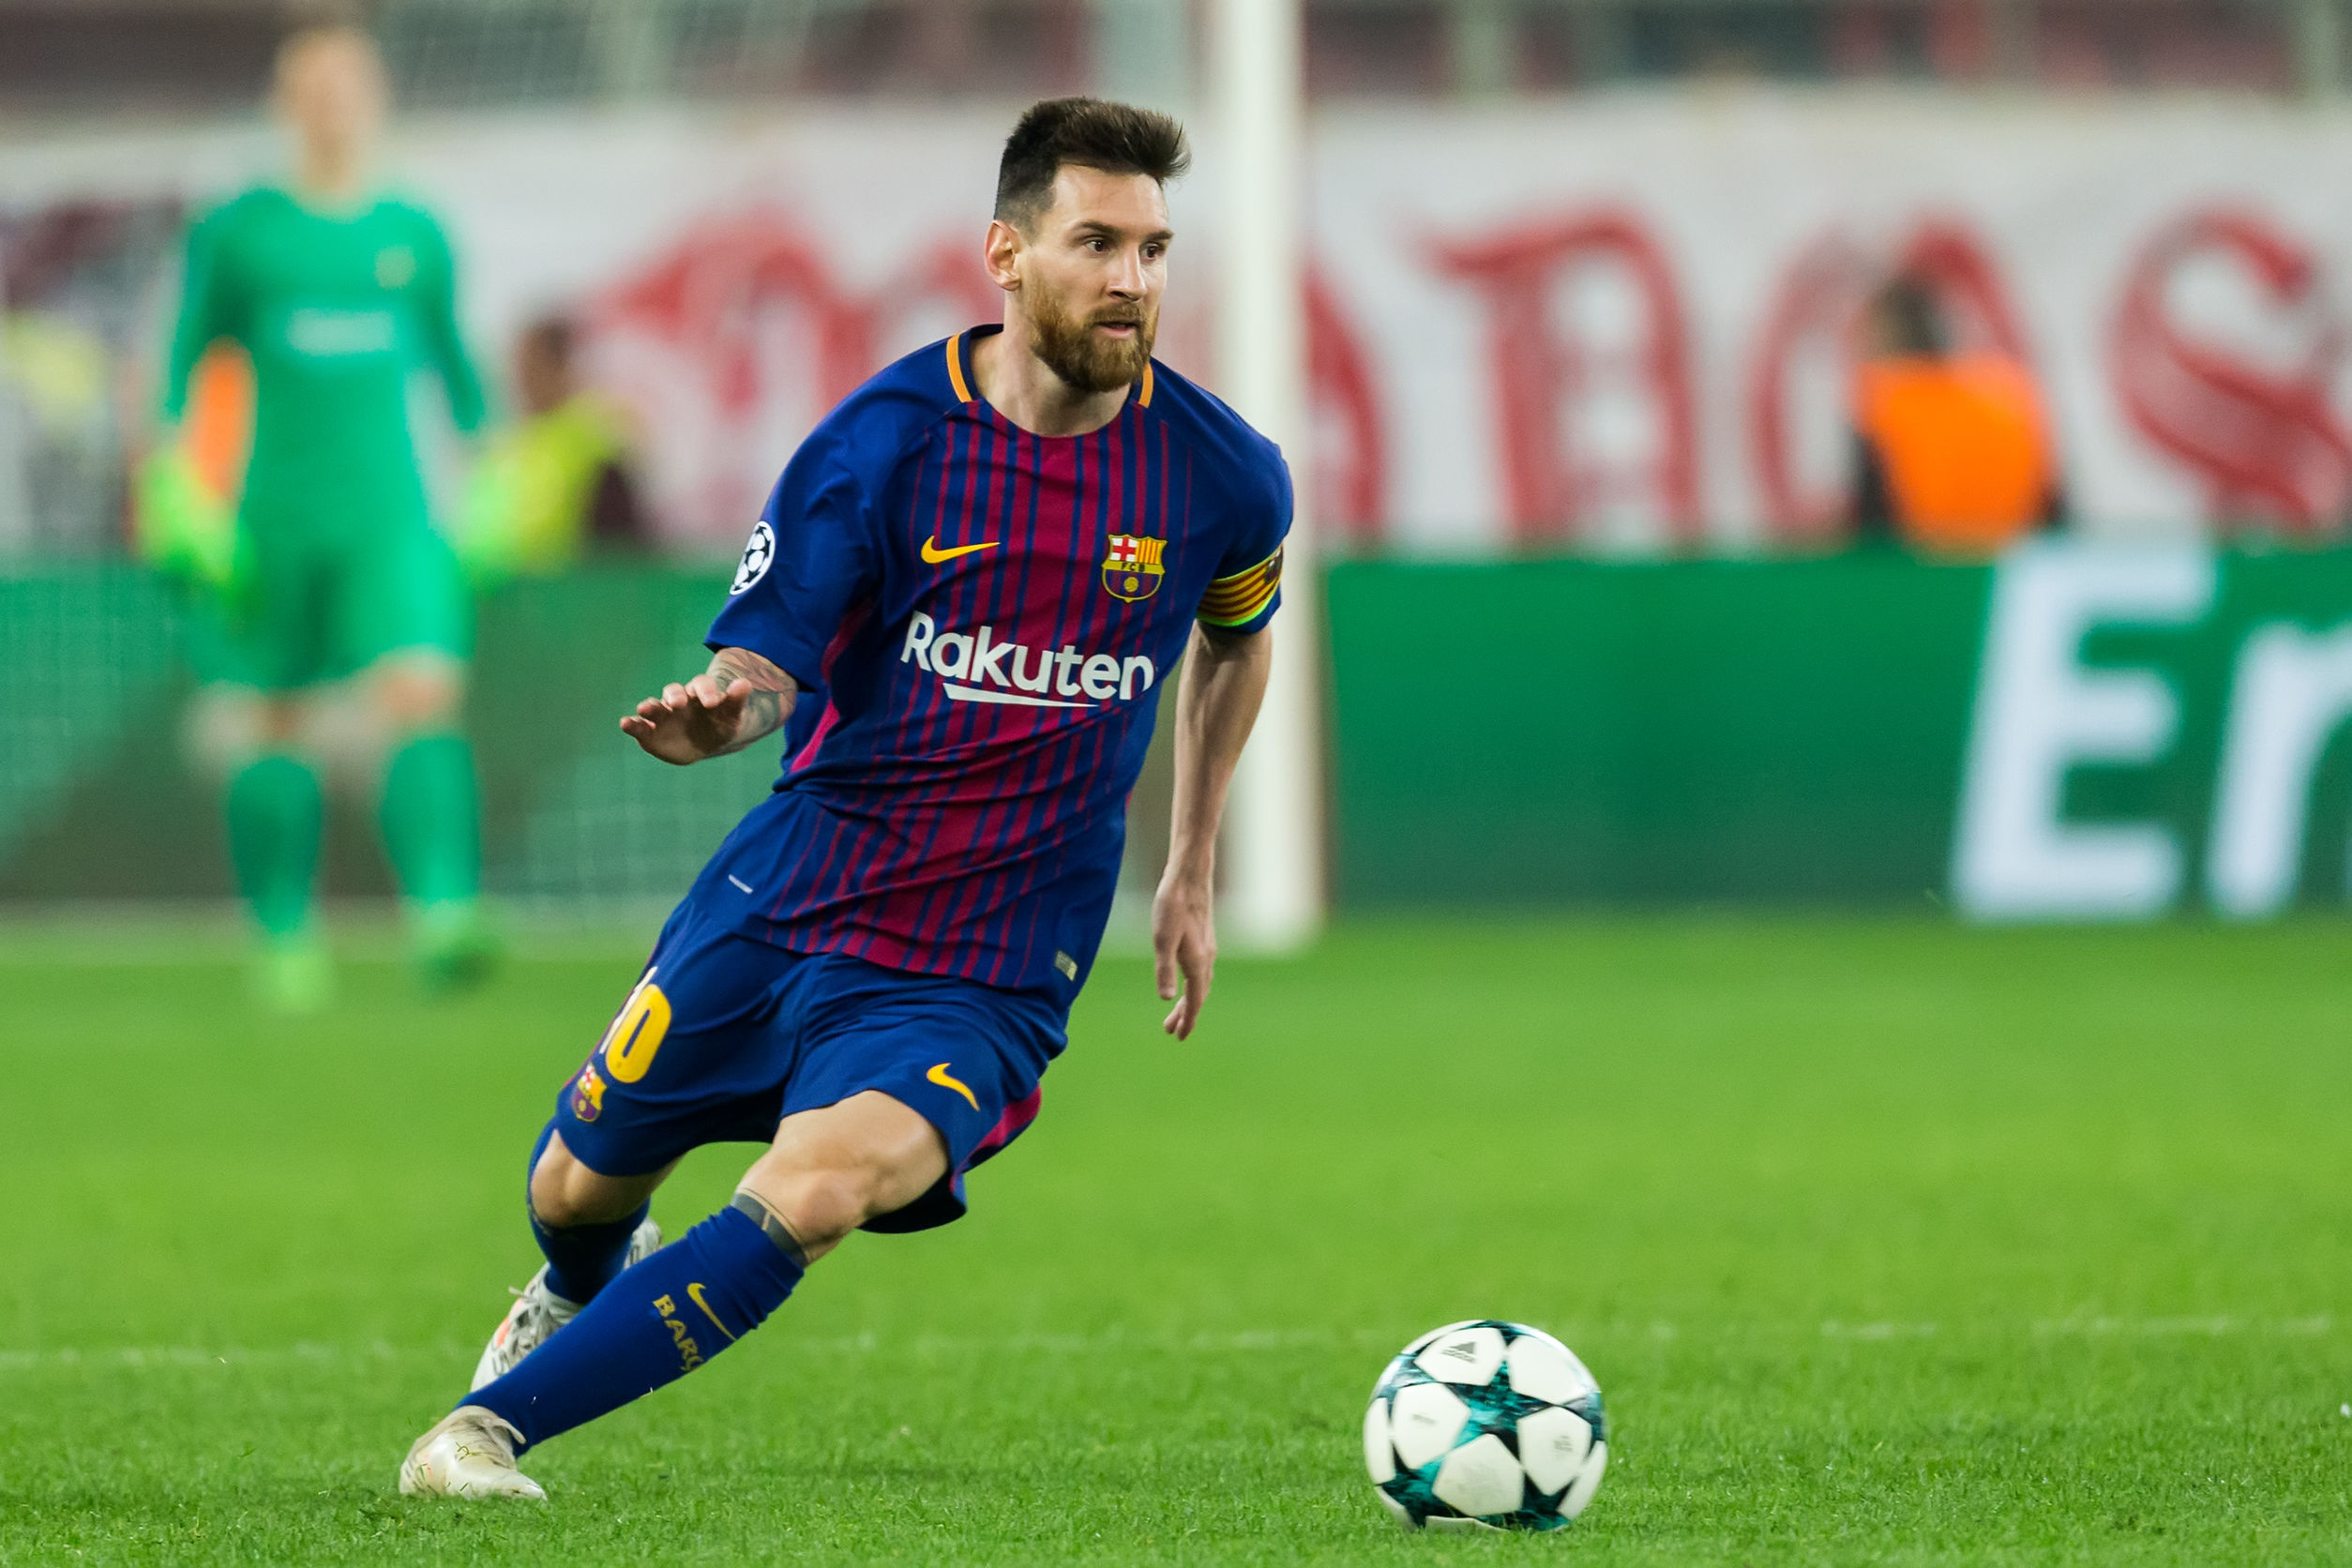 Lionel Messi est l'un des plus grands footballeurs de l'histoire. Crédit photo: VASILIS VERVERIDIS/ 123Rf